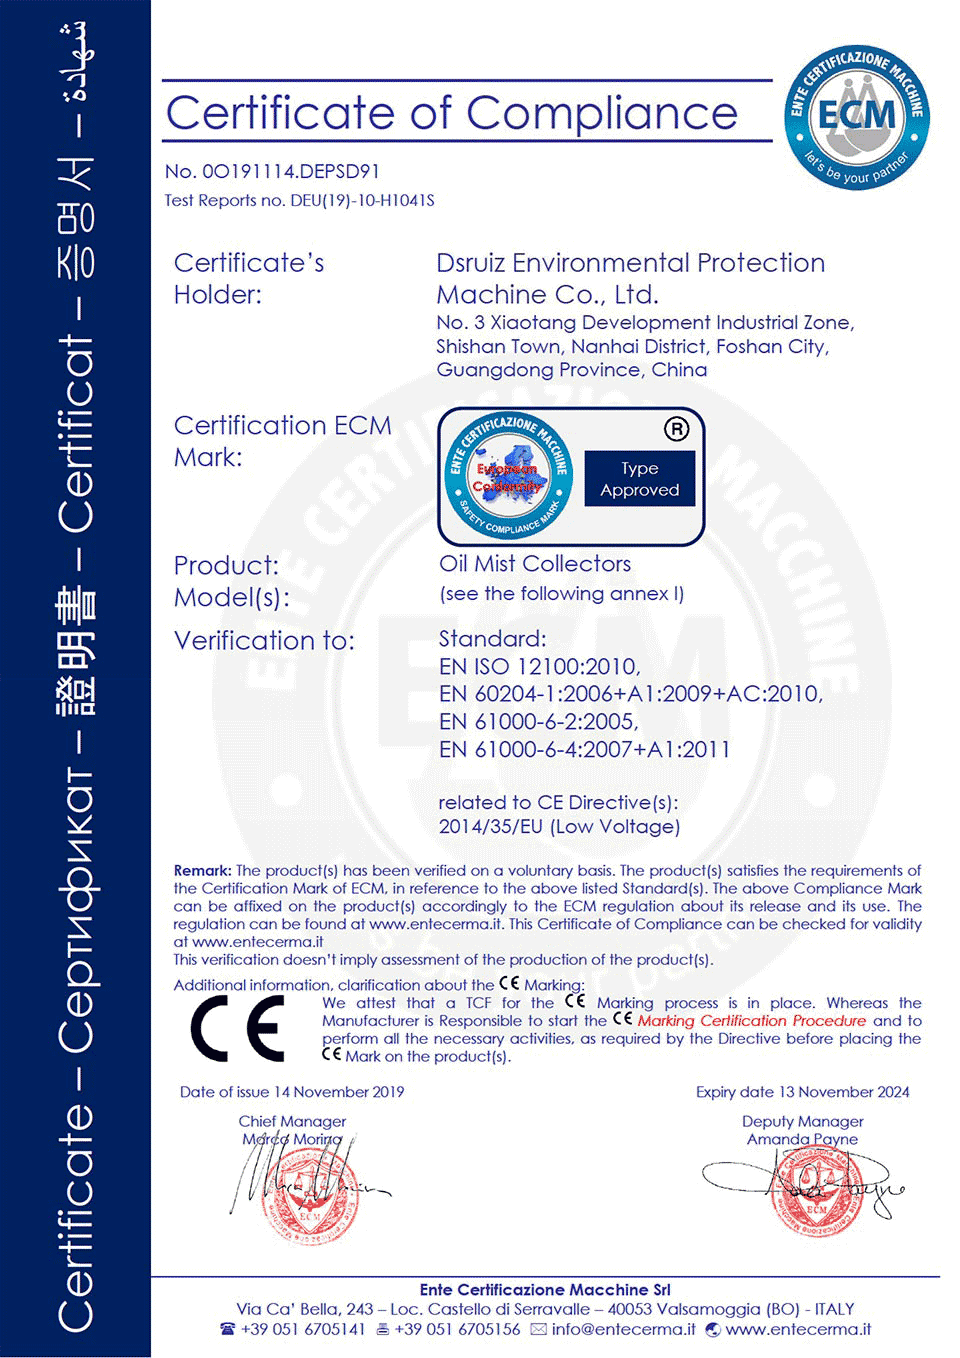 百瑞泽全系列产品通过欧盟CE安全品质认证-证书1